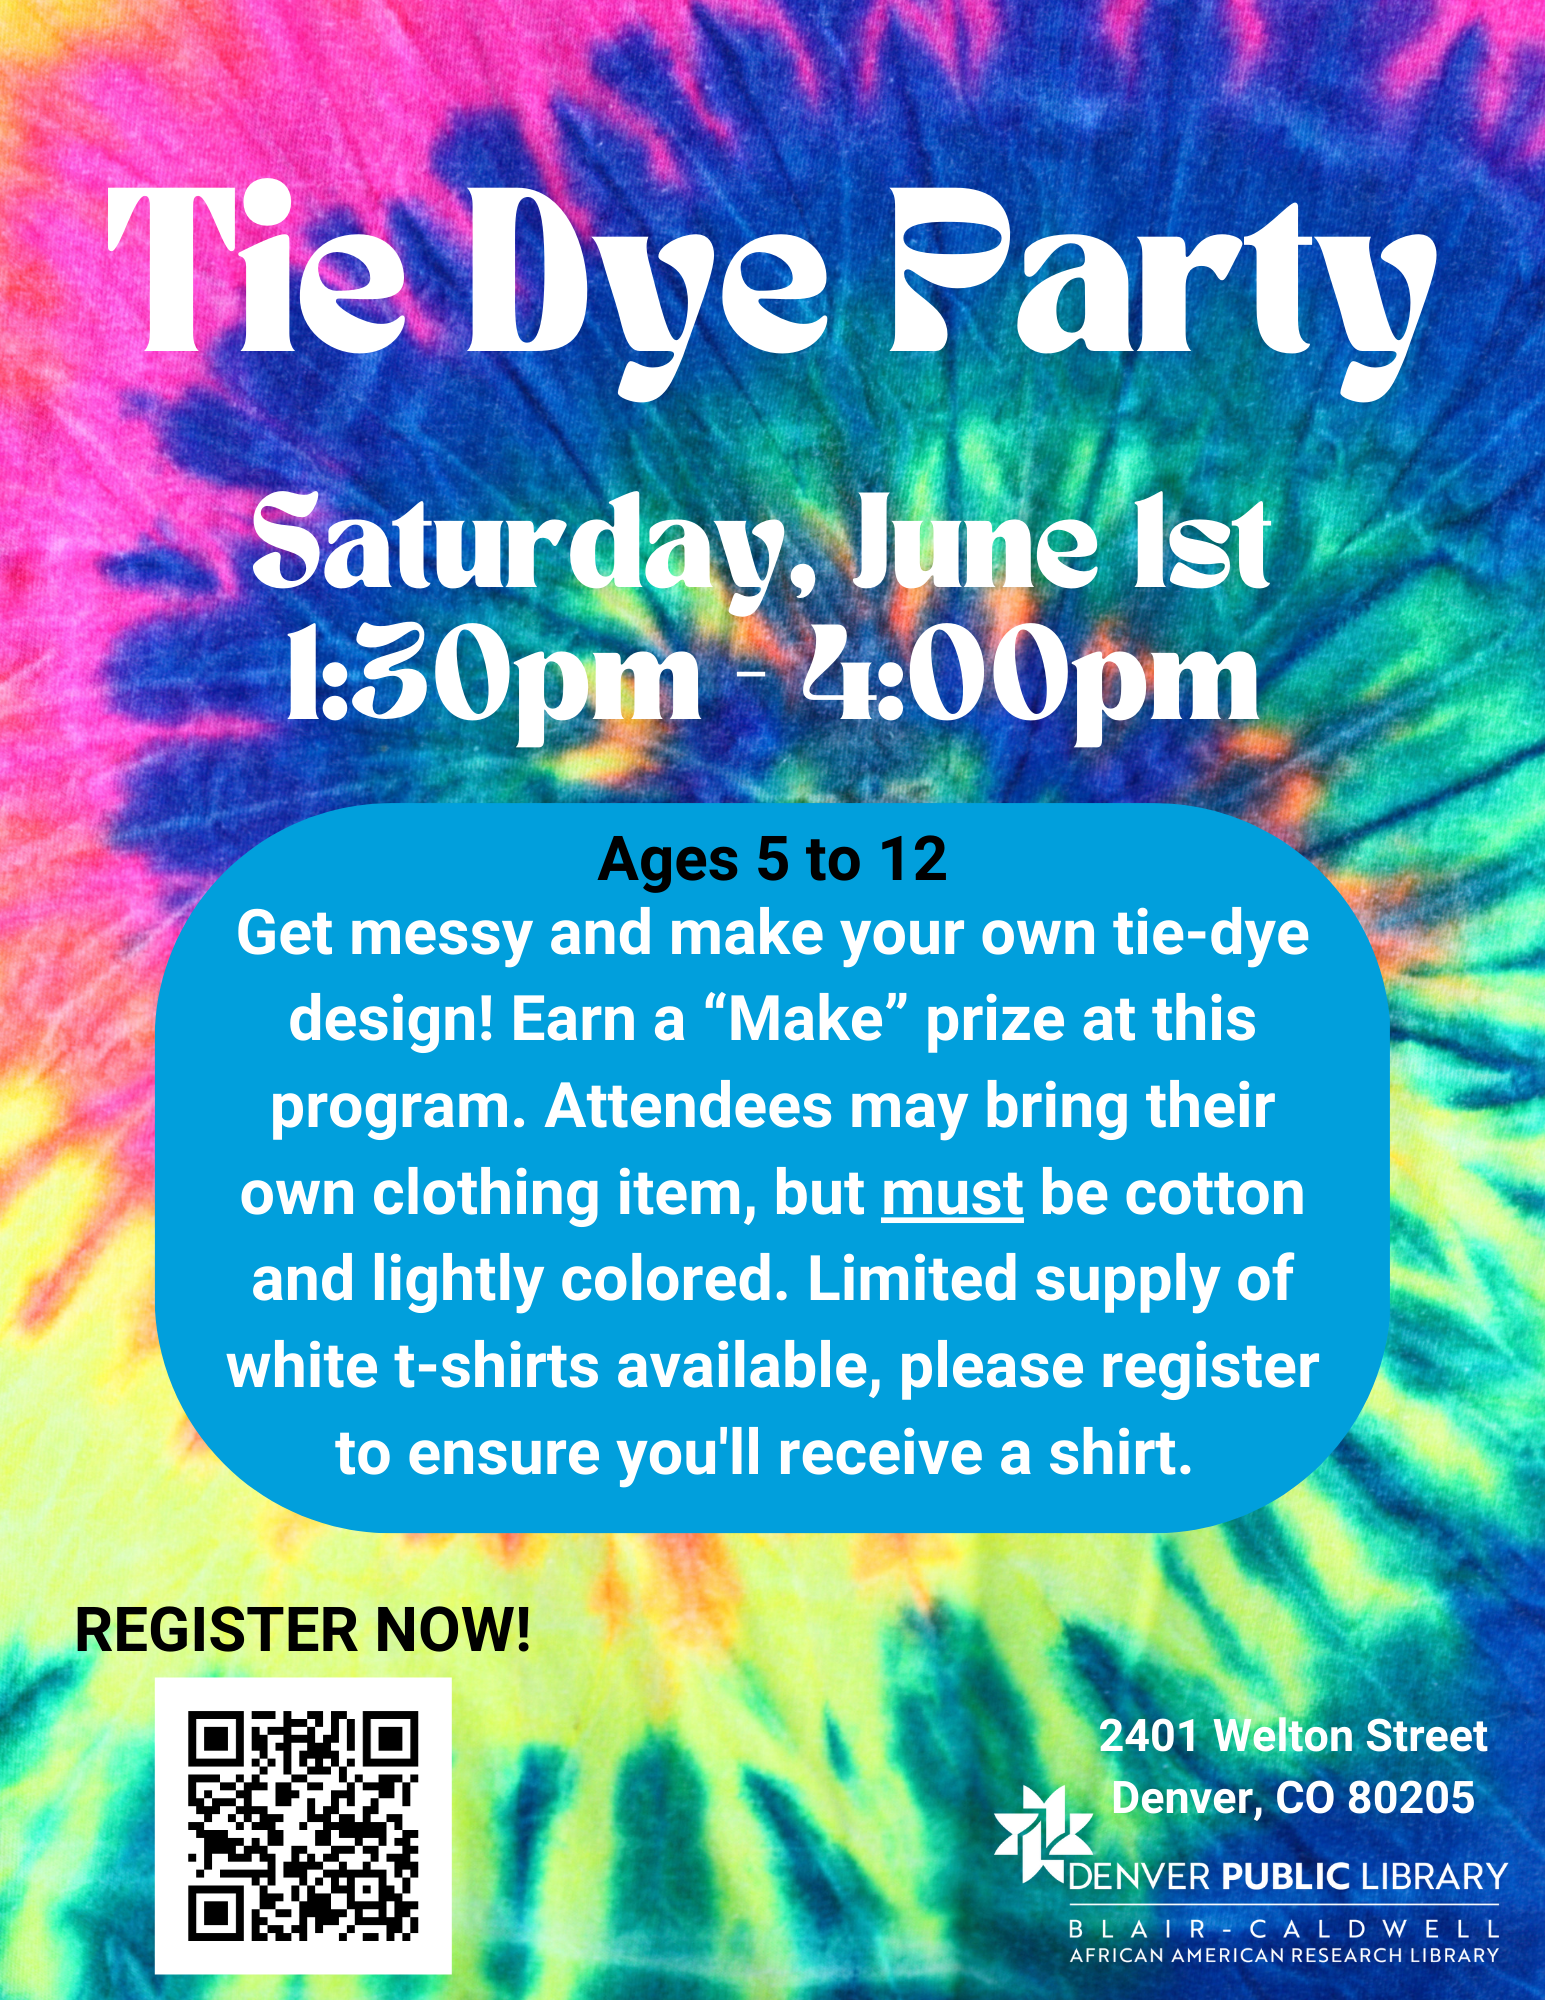 Tie-dye themed flyer